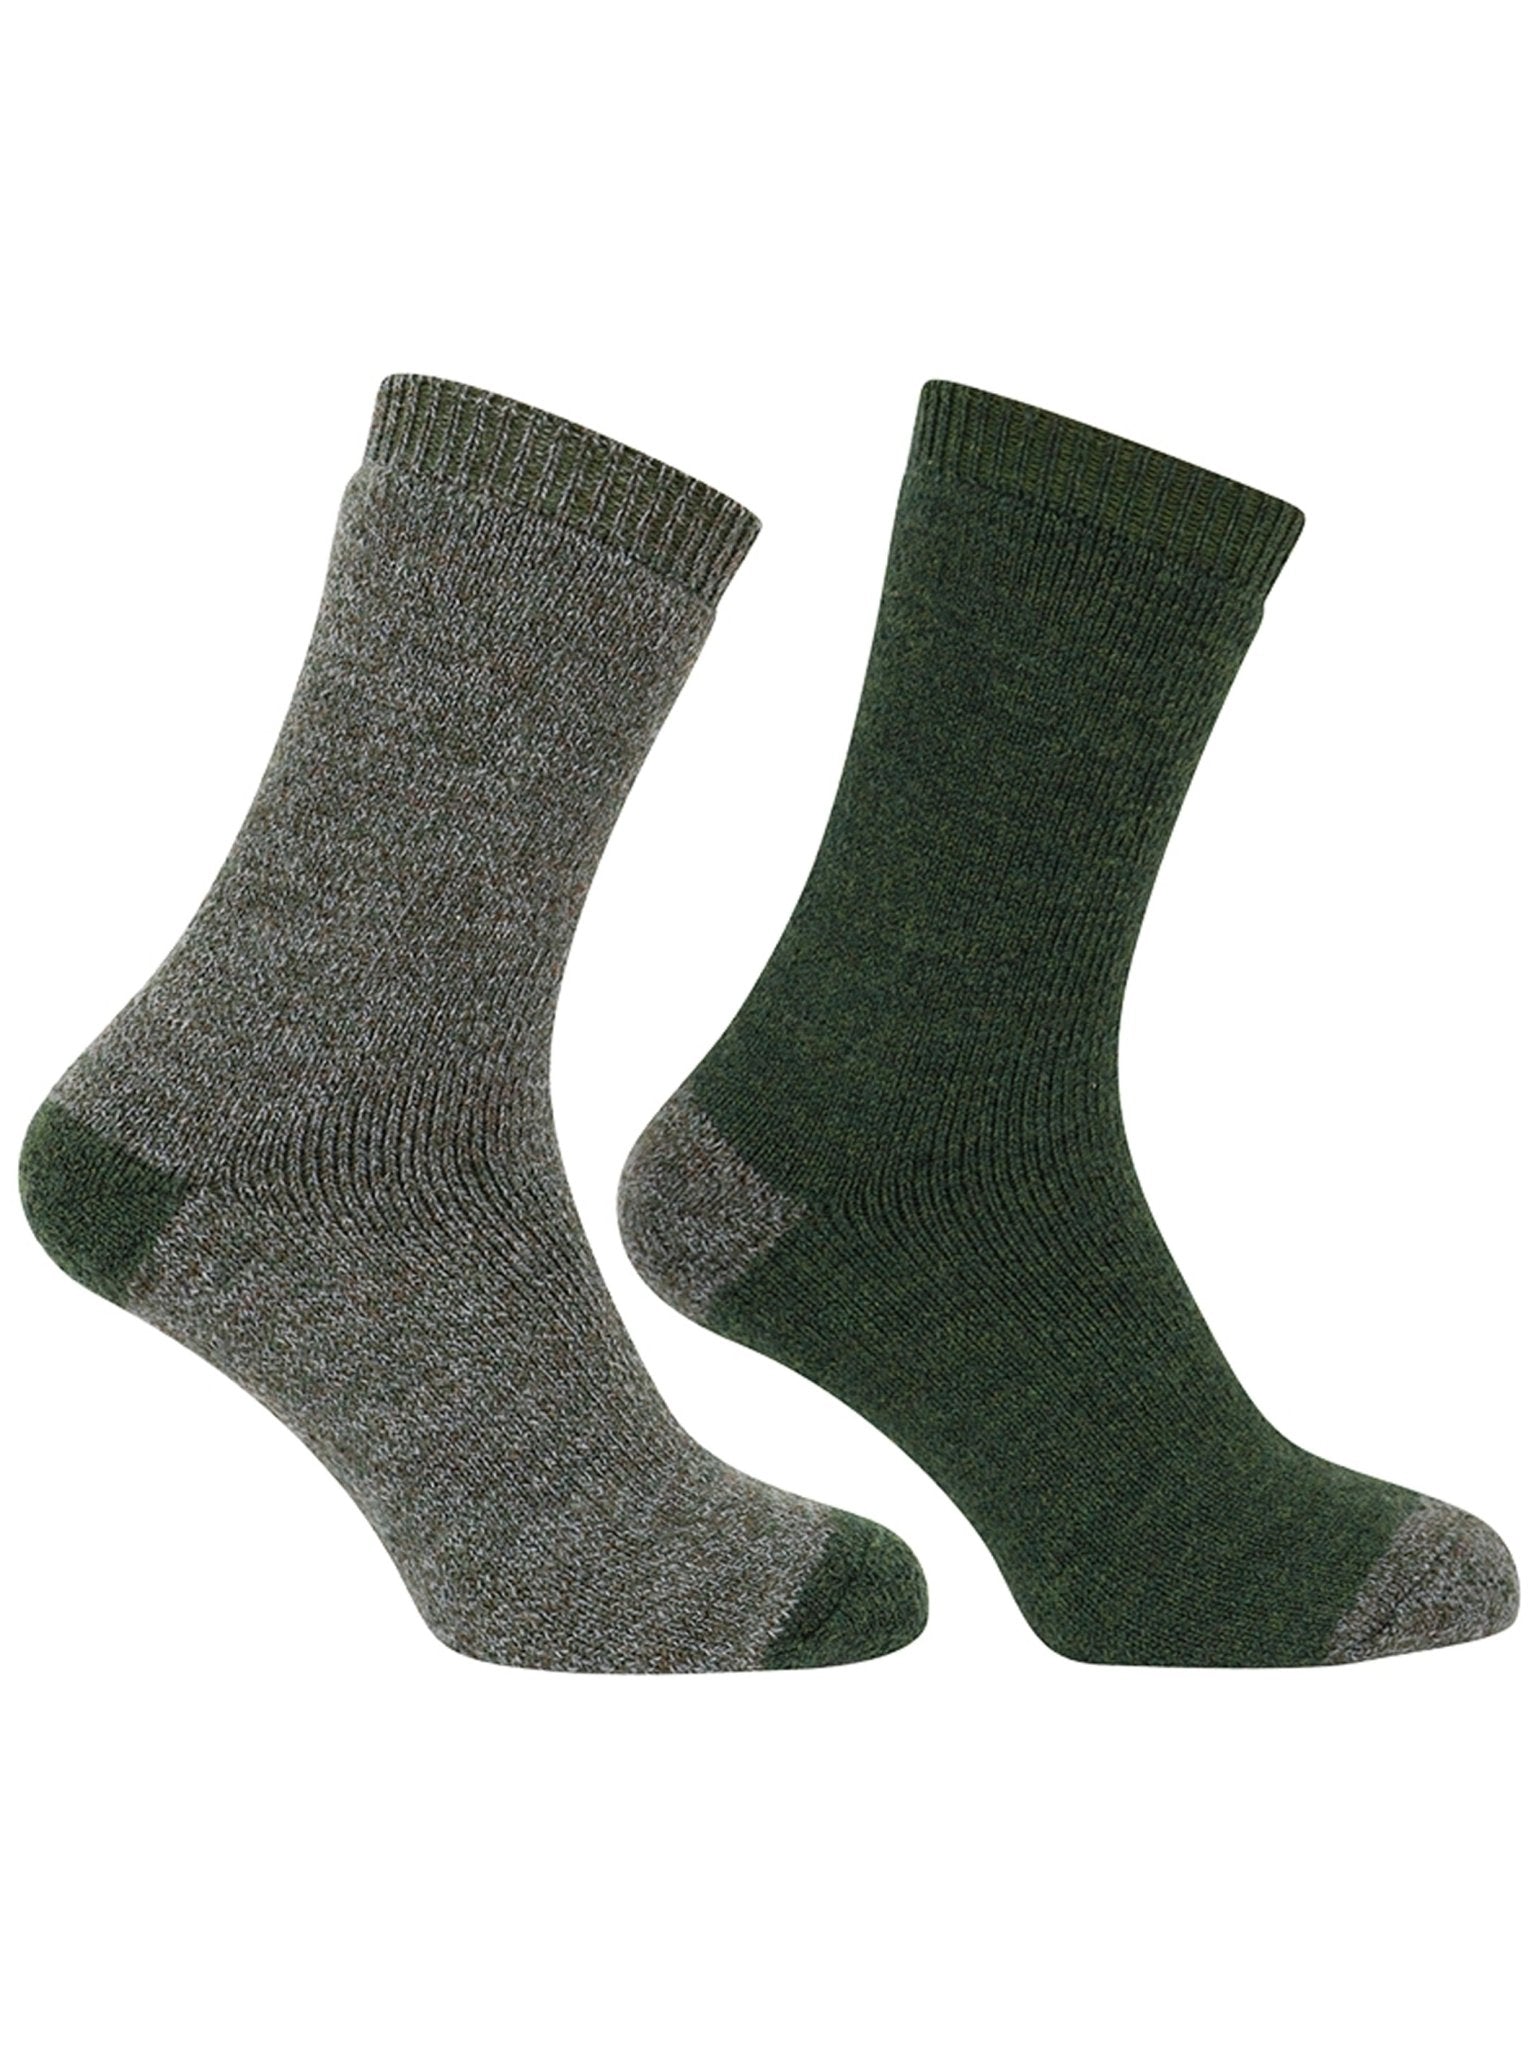 Hoggs of Fife Hoggs of Fife - 1904 Short Country Mens Socks (Twin Pack Socks) - Tech Active Socks